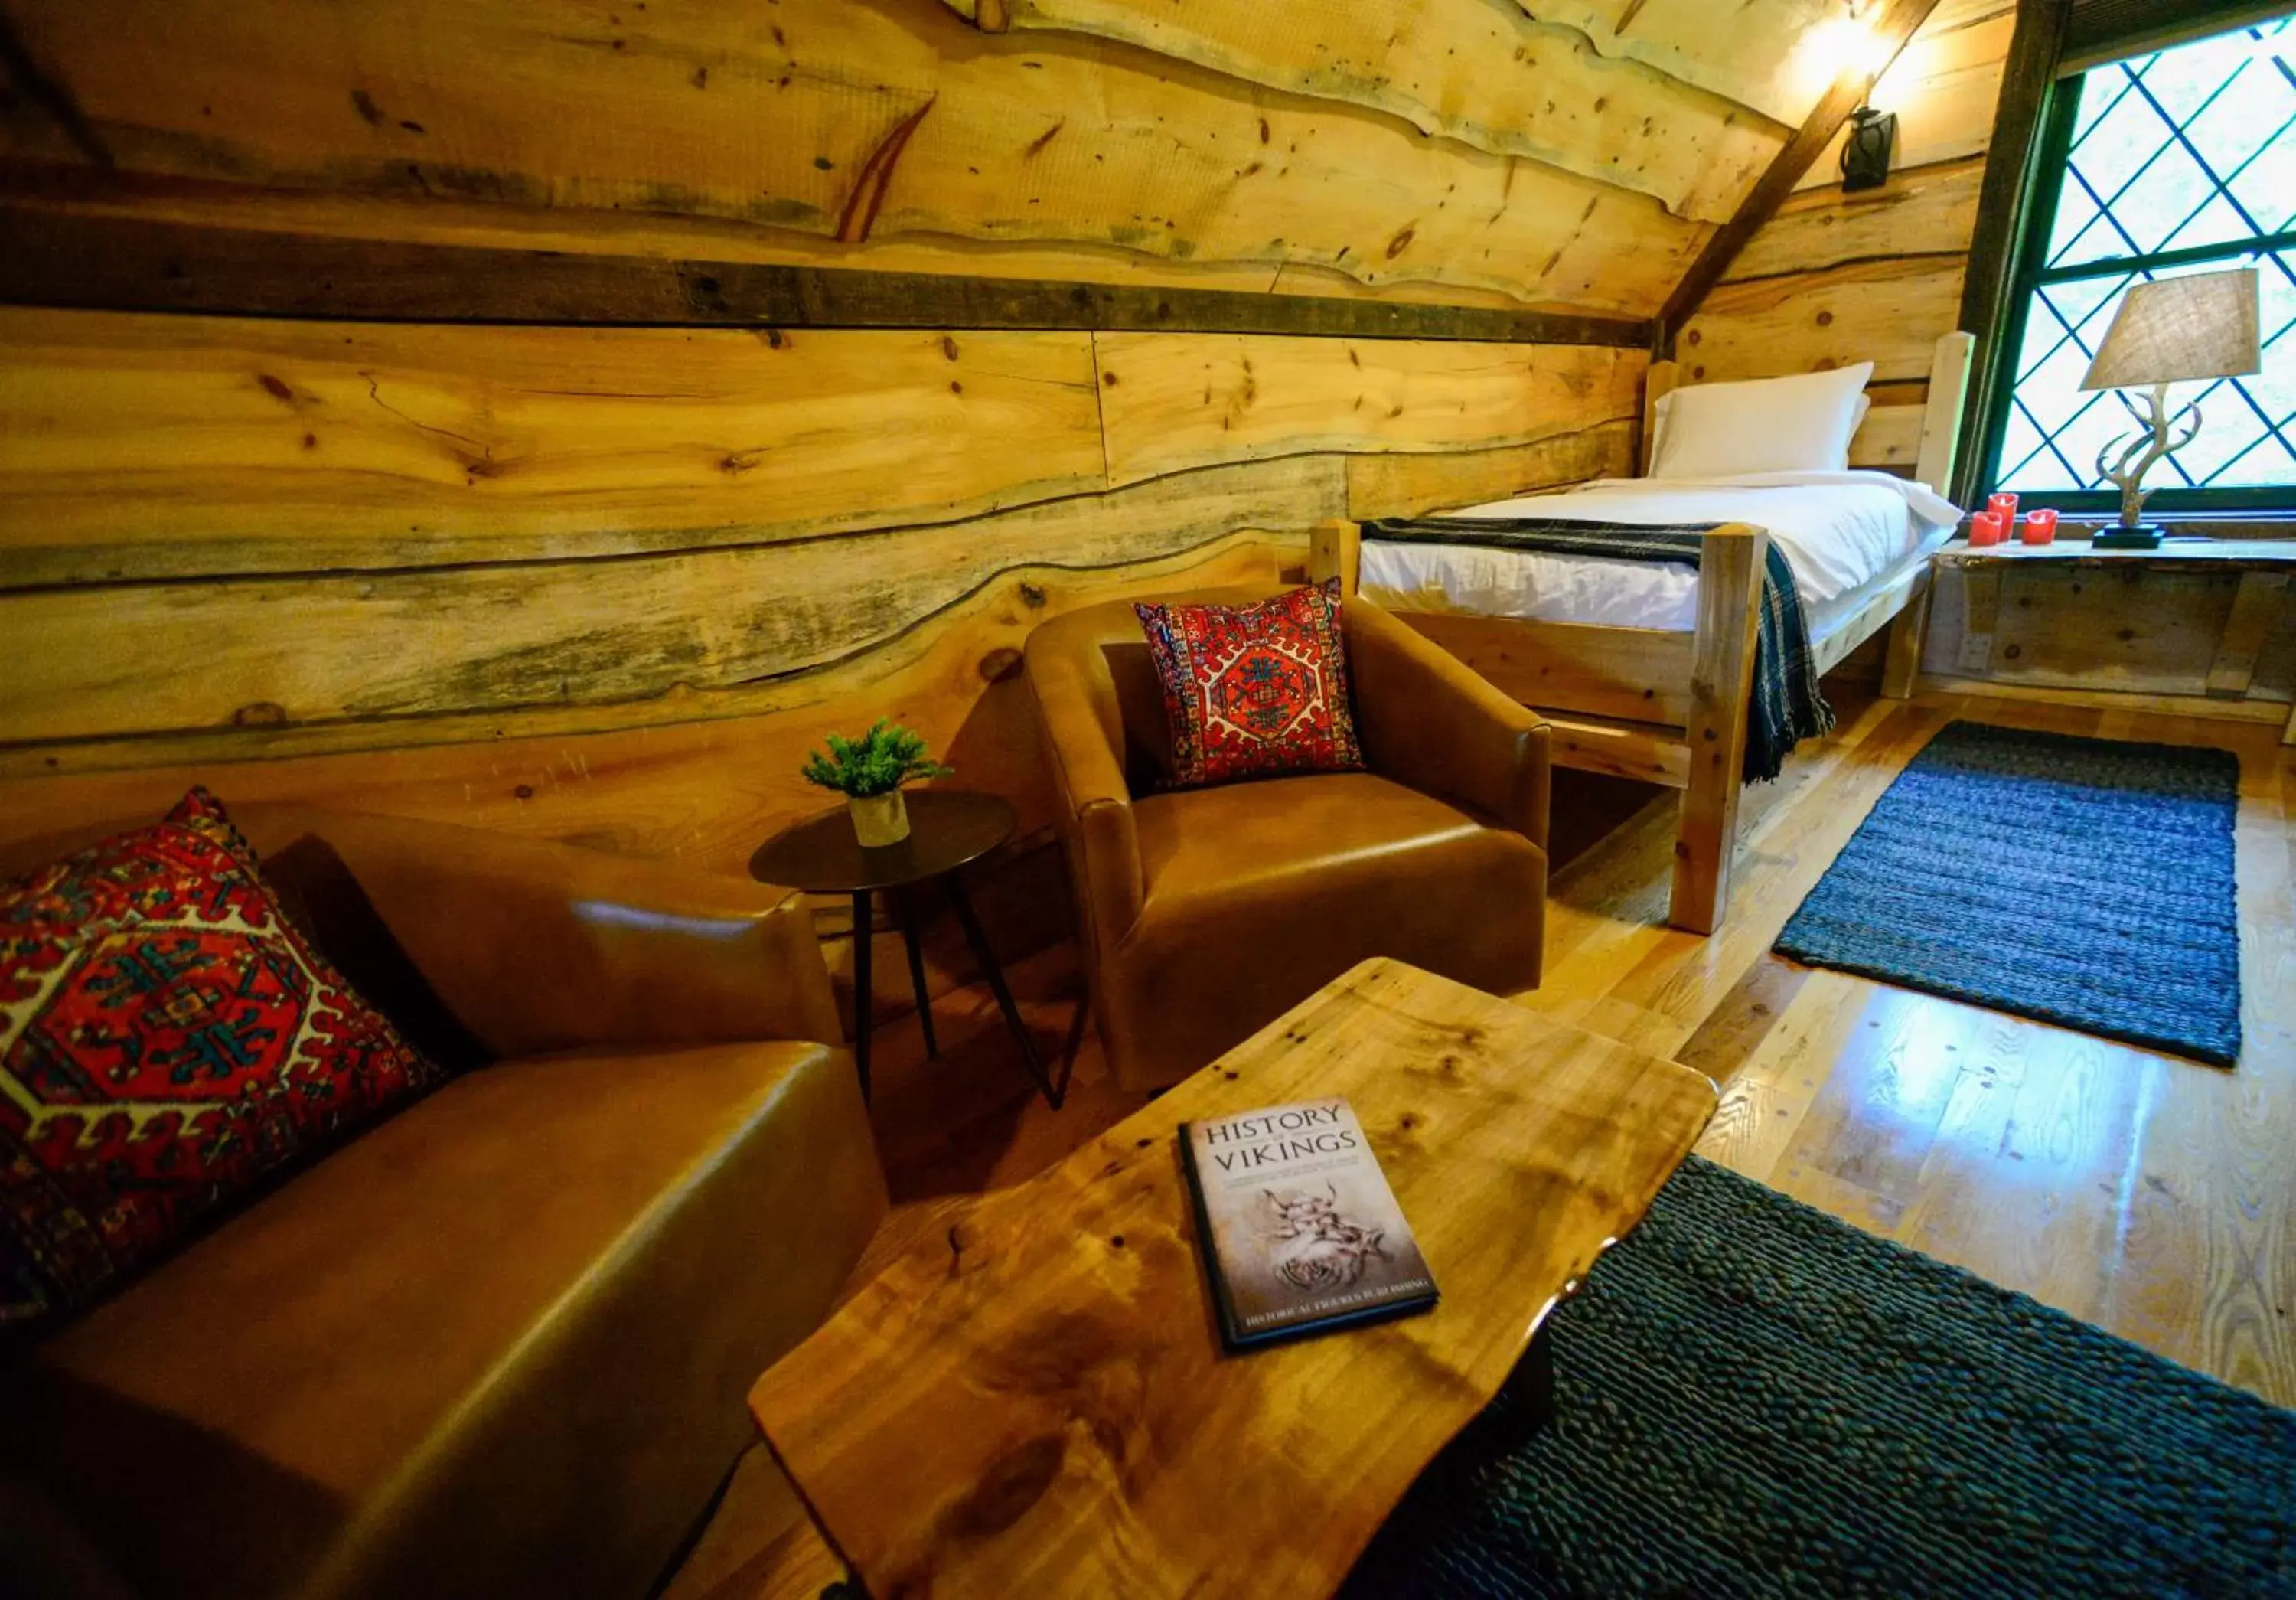 Seating Area in Vikings Villages Resort